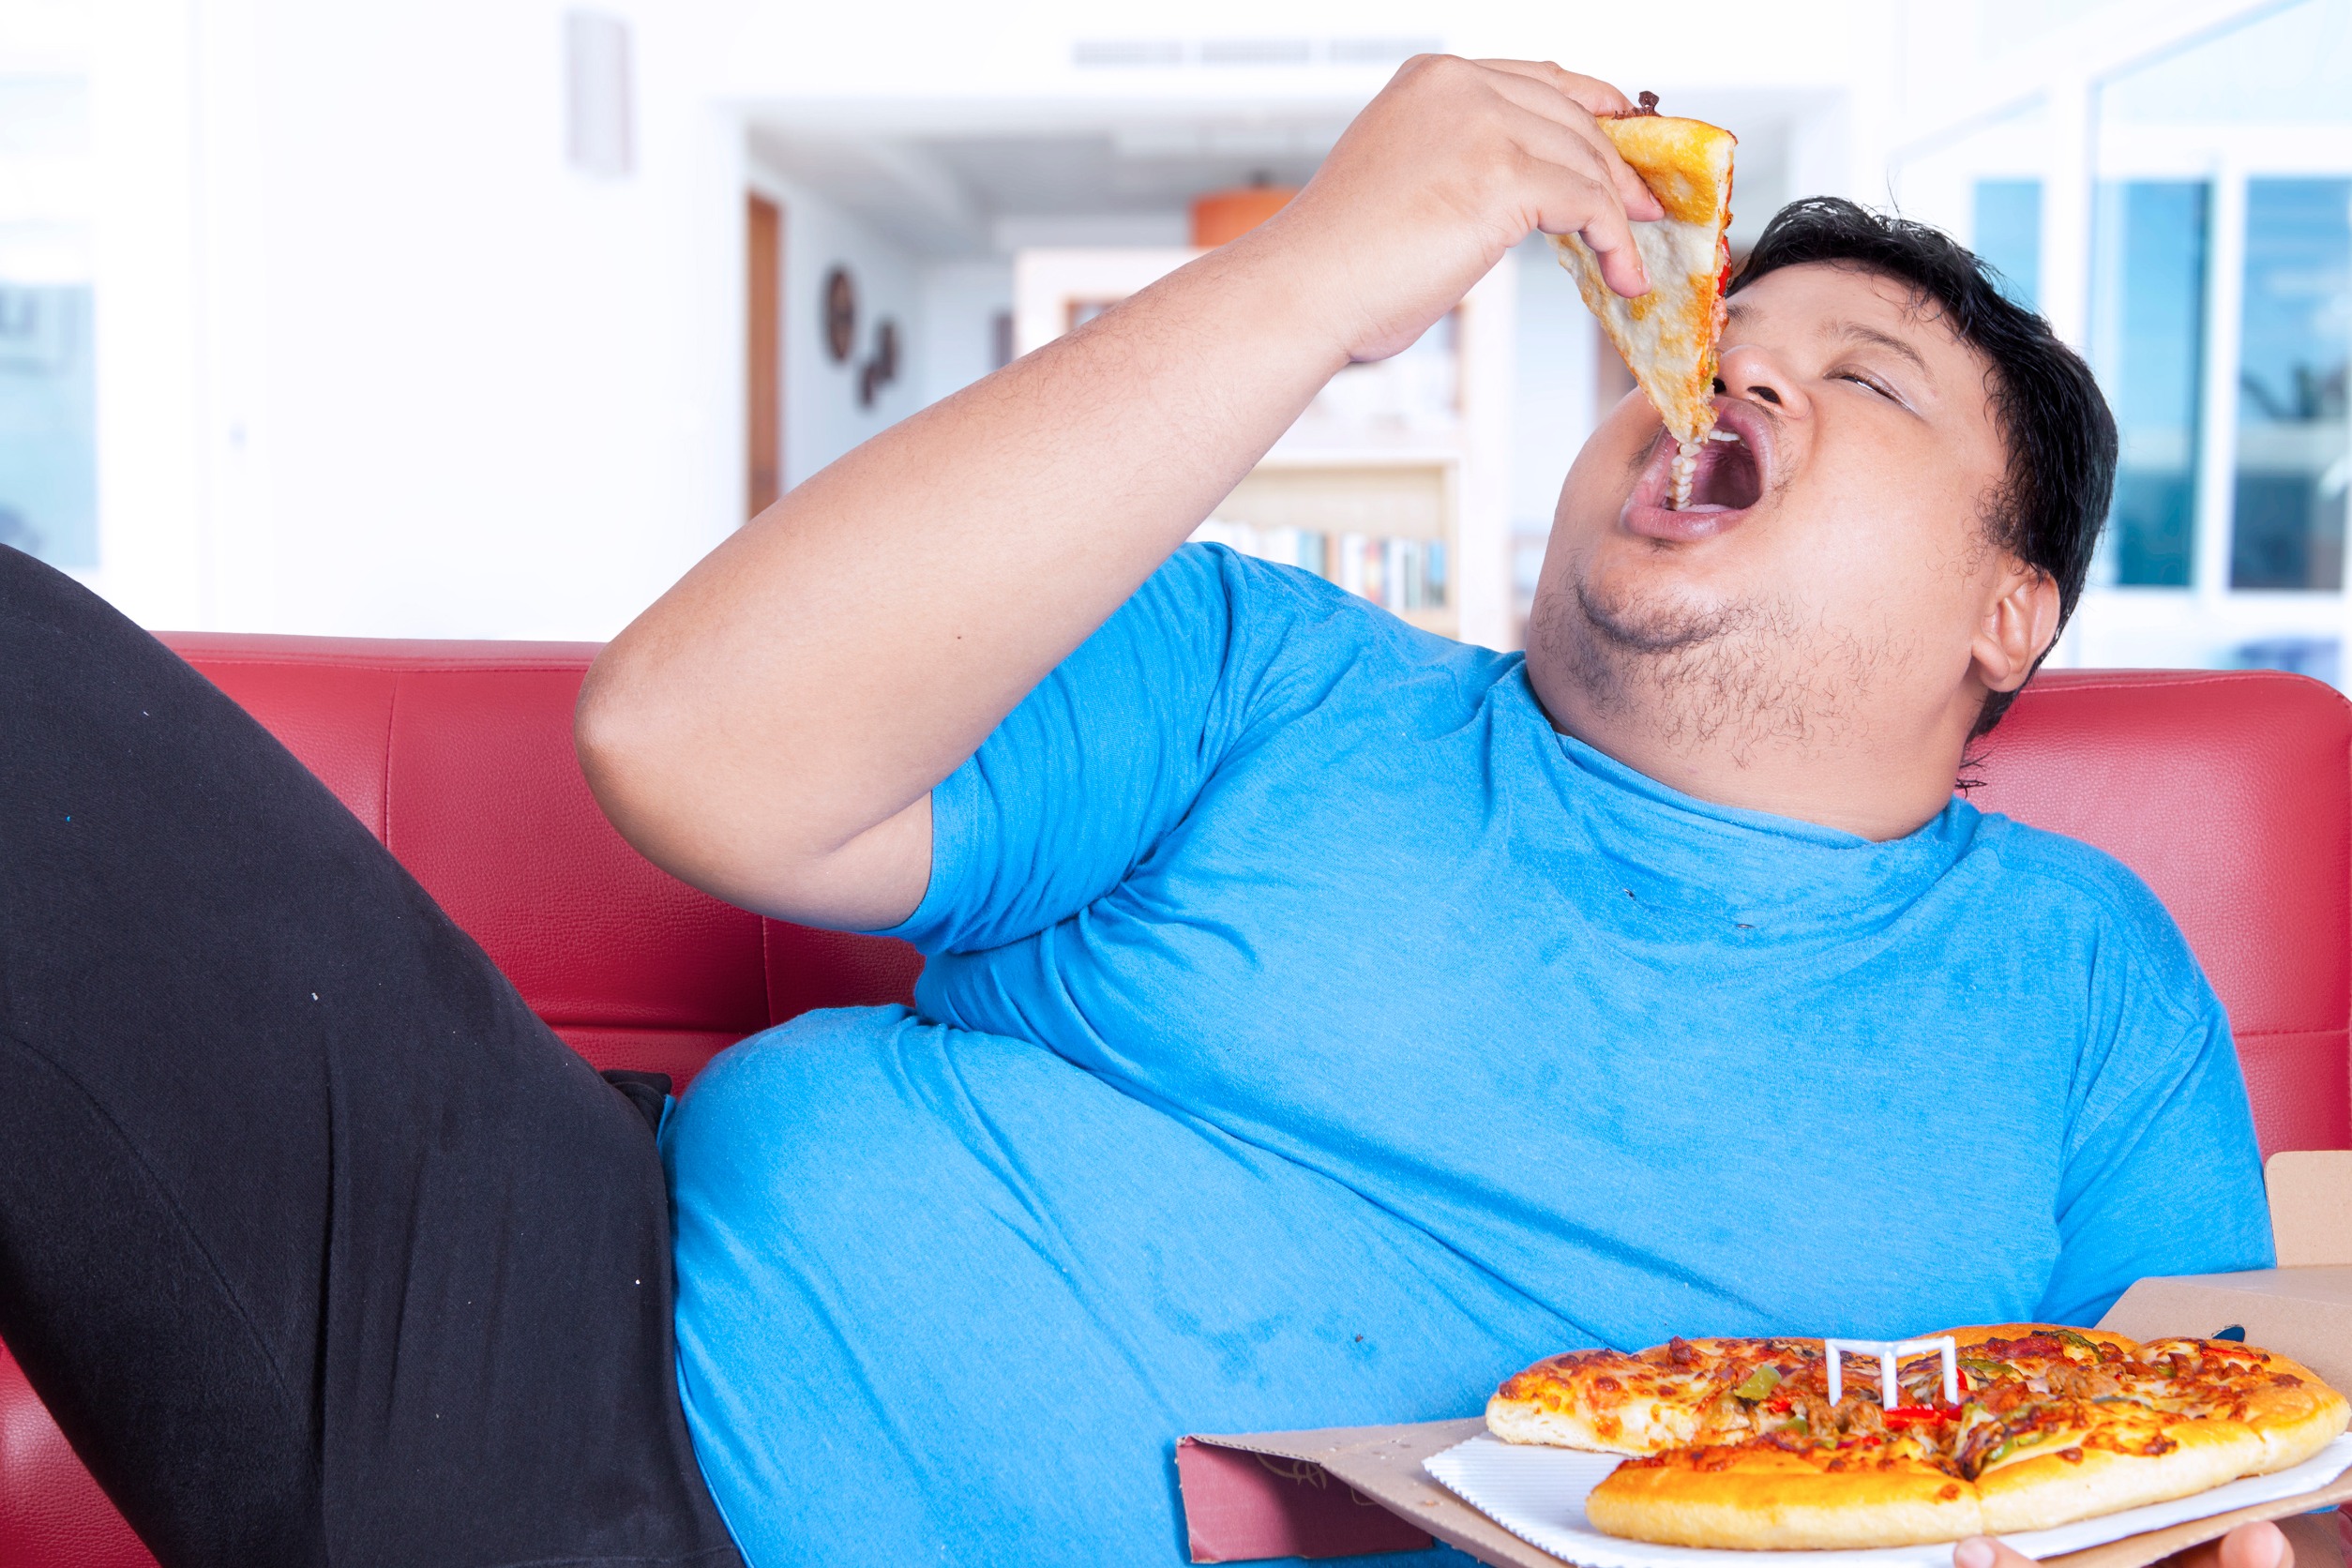 Moet het onderwerp overgewicht meer openlijk en constructief besproken worden in de samenleving? 15